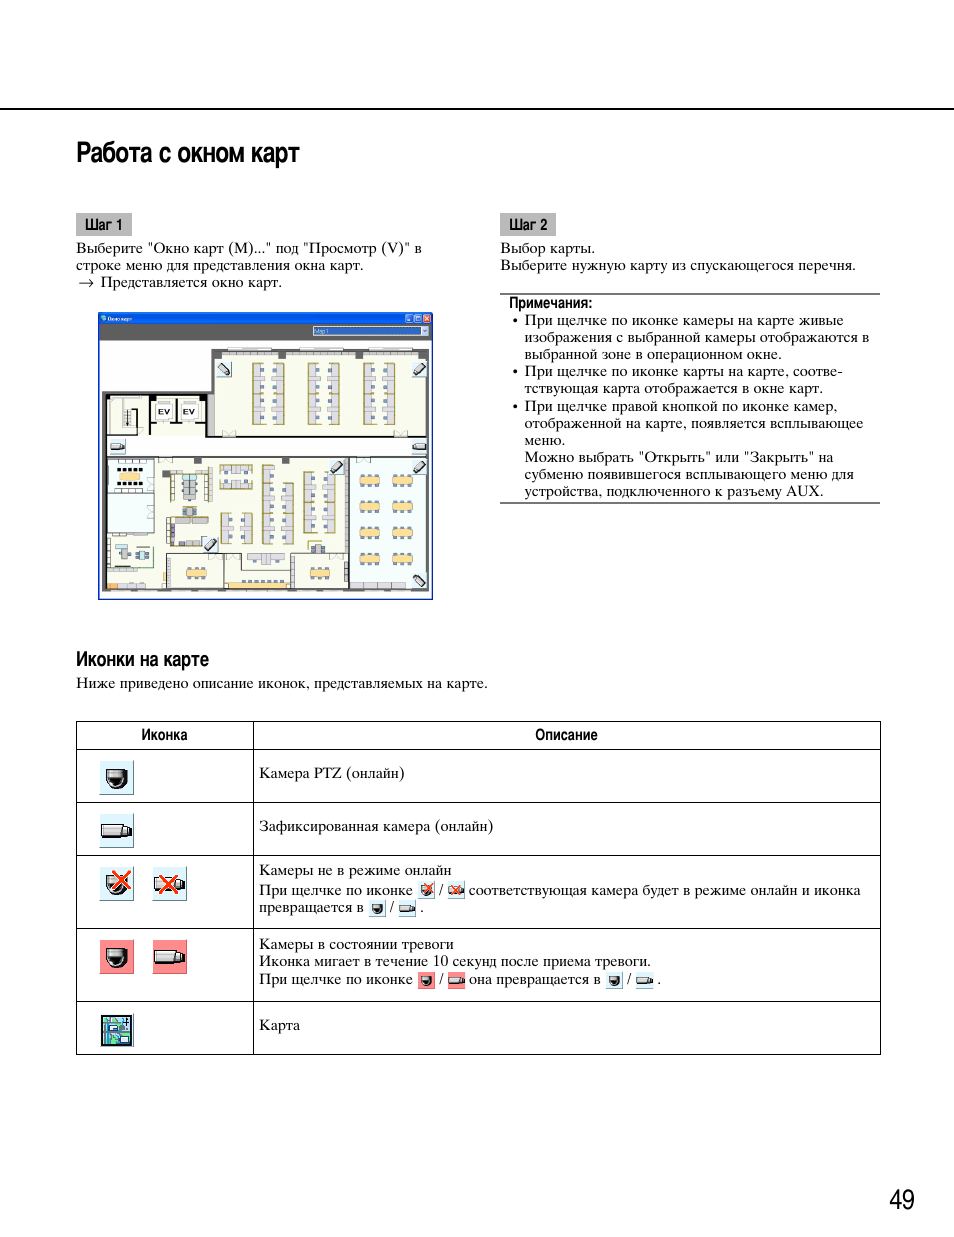 Работа с окном карт, Шаг 1, Шаг 2 | Примечания, Иконки на карте | Инструкция по эксплуатации Panasonic WV-ASM100 - | Страница 49 / 97